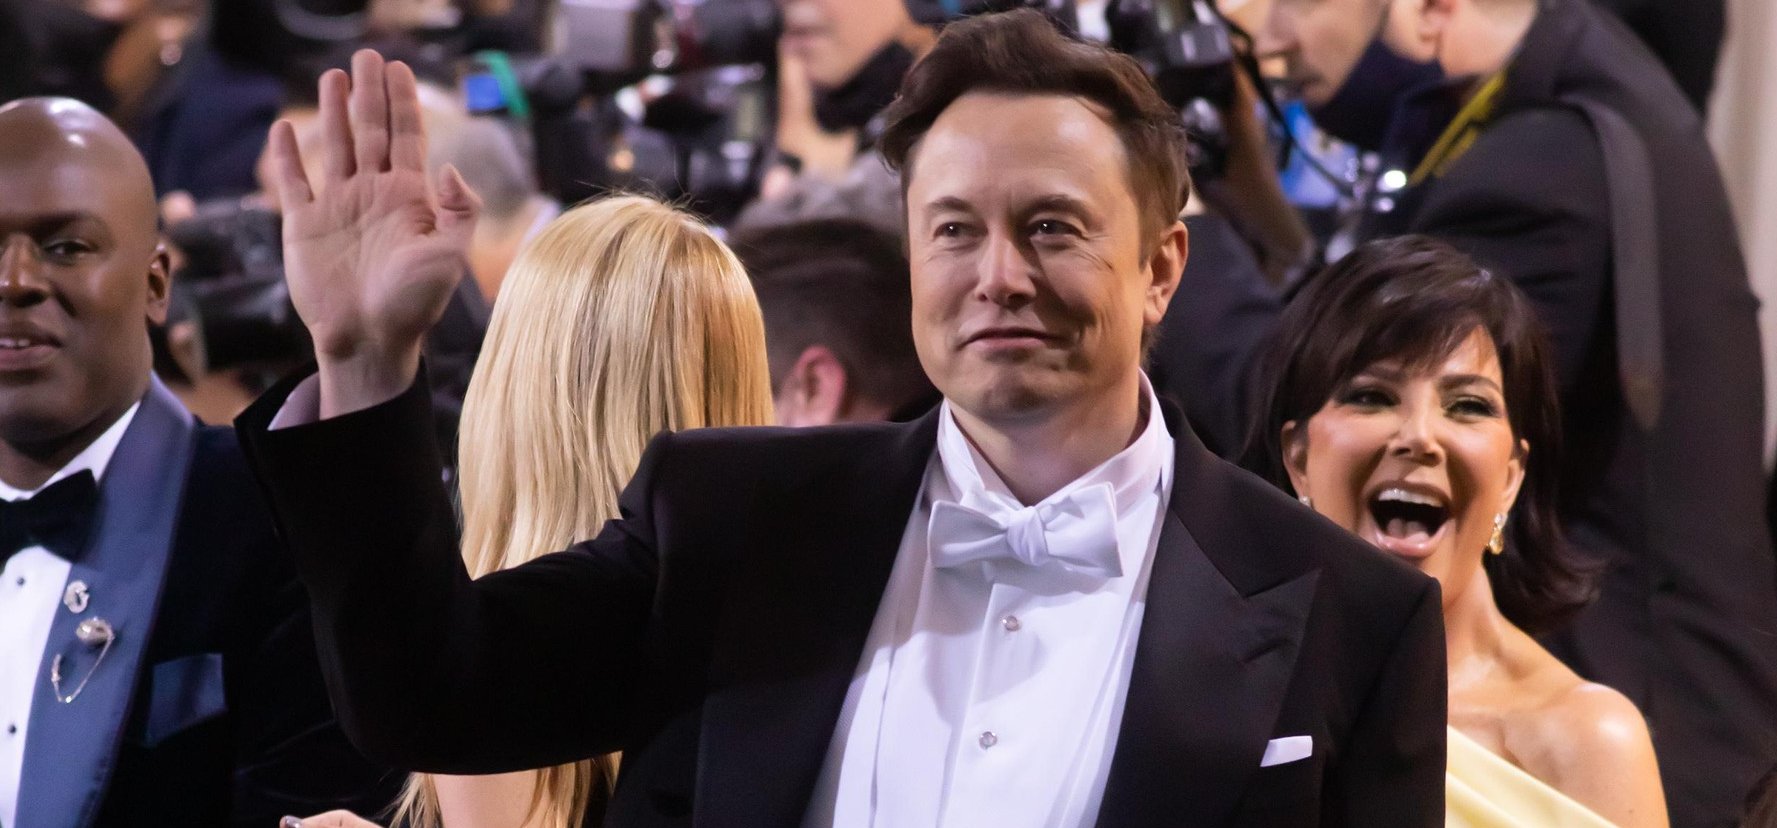 Elon Musk új barátnője a melleit és a popsiját is megmutatta